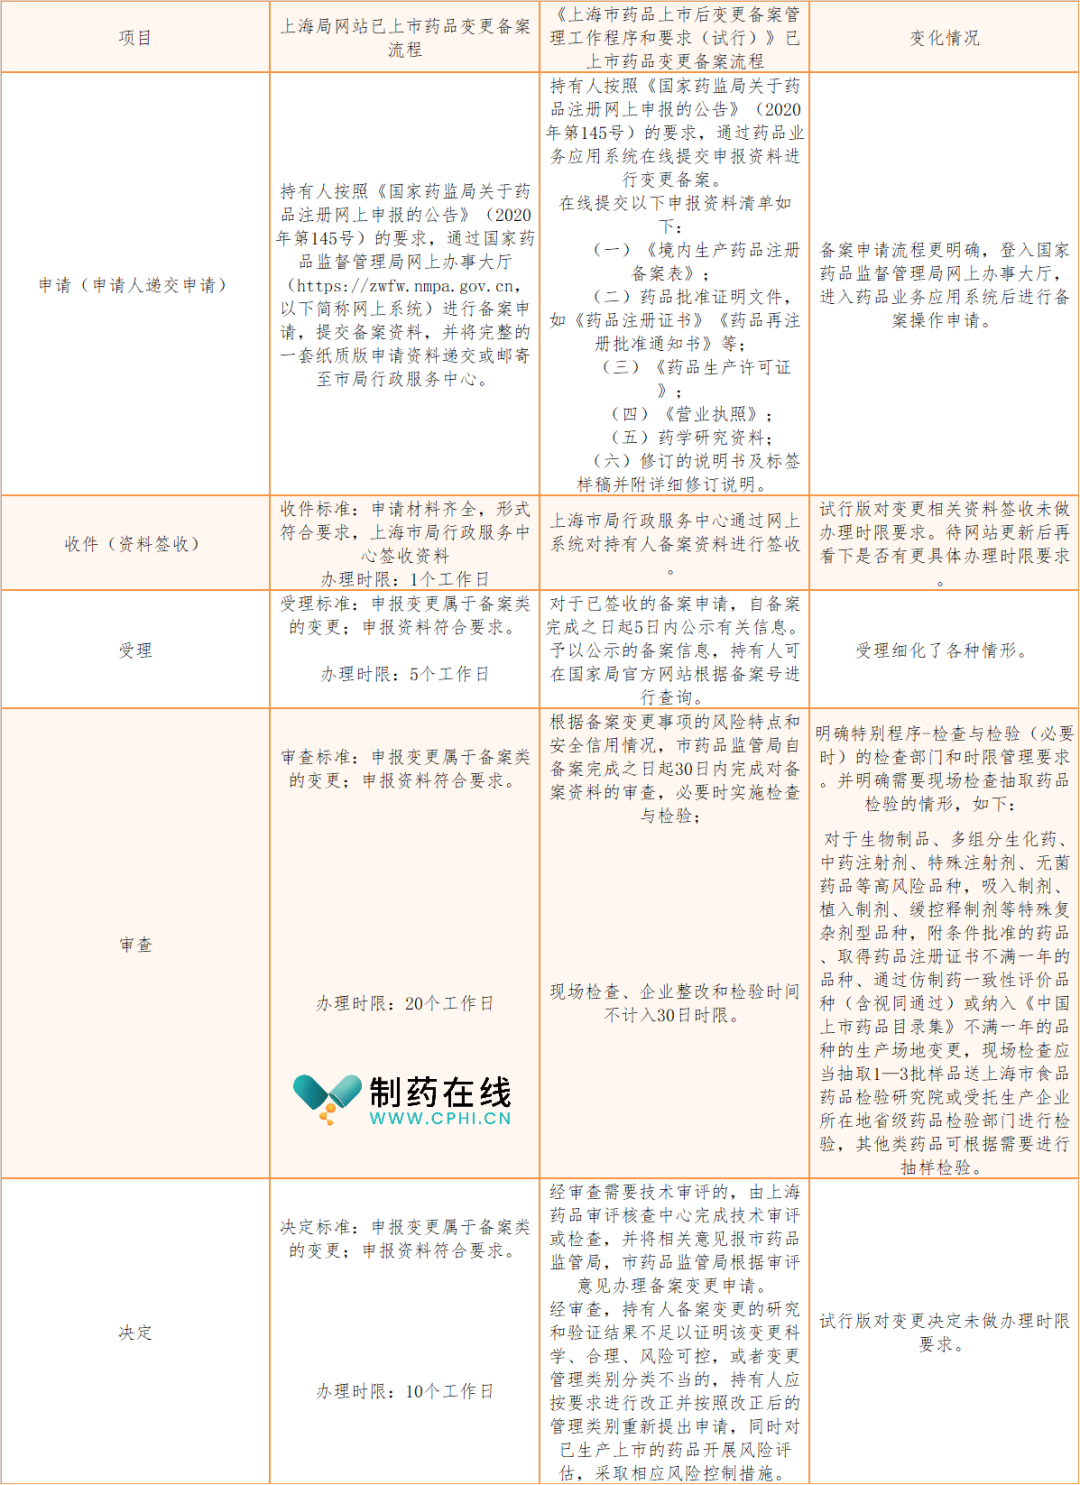 上海市已上市药品变更备案流程变化对照表